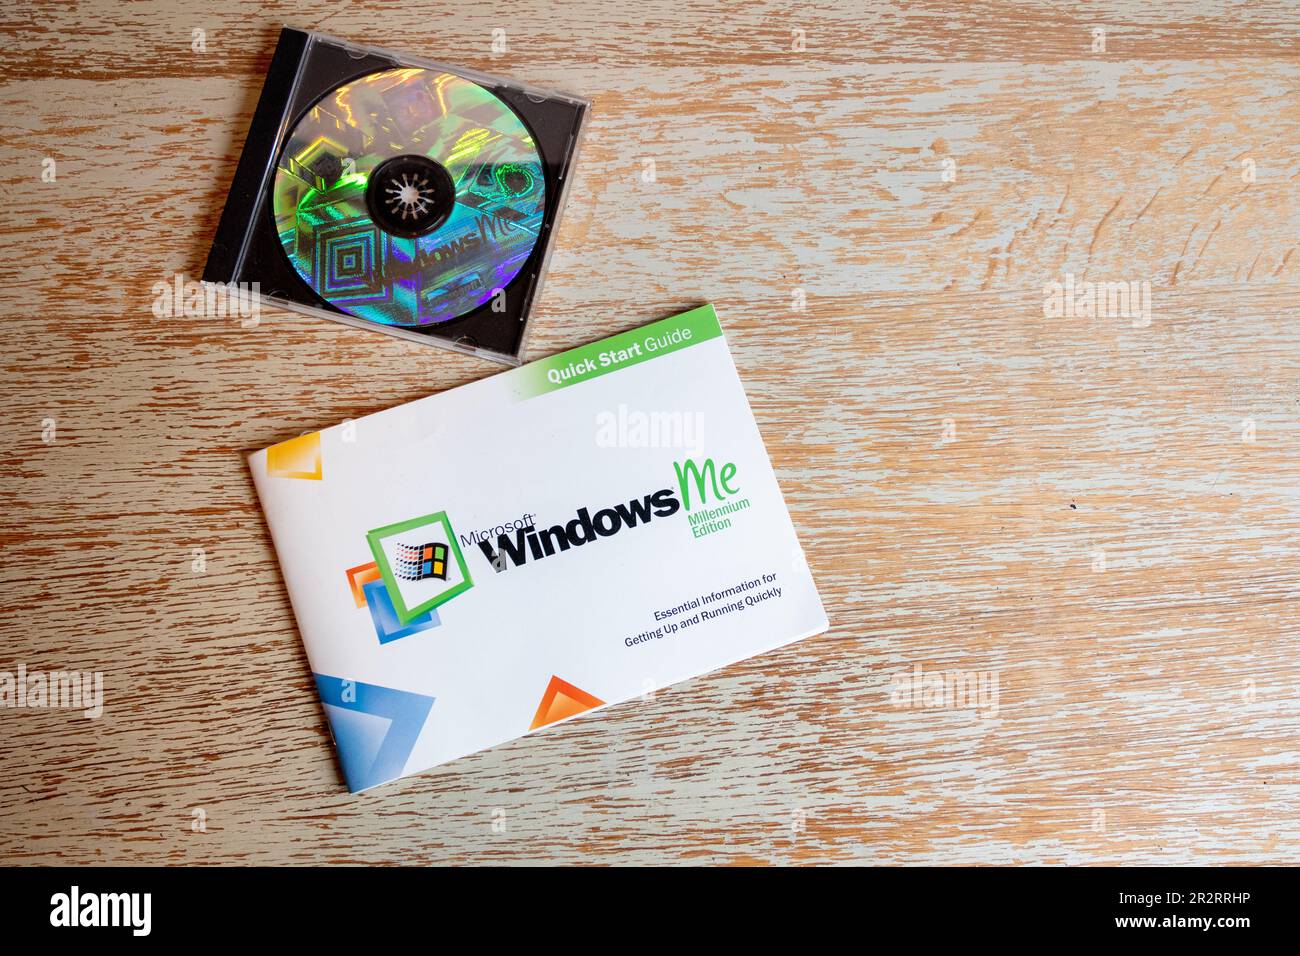 Disque et livret pour Microsoft Windows ME Millennium Edition Banque D'Images